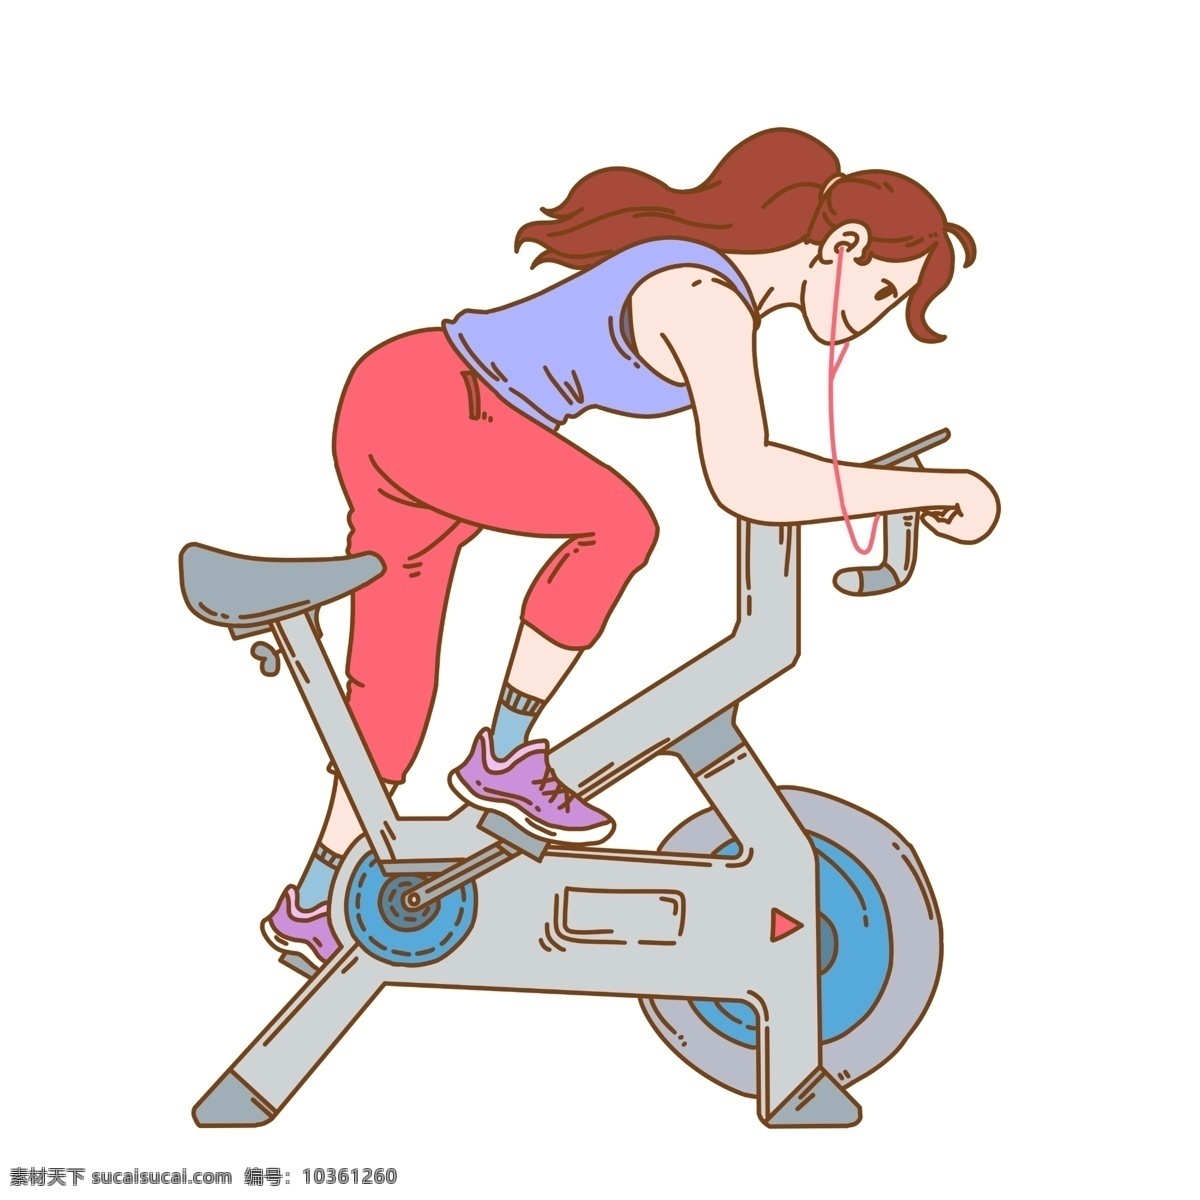 健身 卡通 手绘 插画 健身房 运动 塑身 健康 运动鞋 自行车 运动单车 耳机 音乐 健美 手绘插画 美女